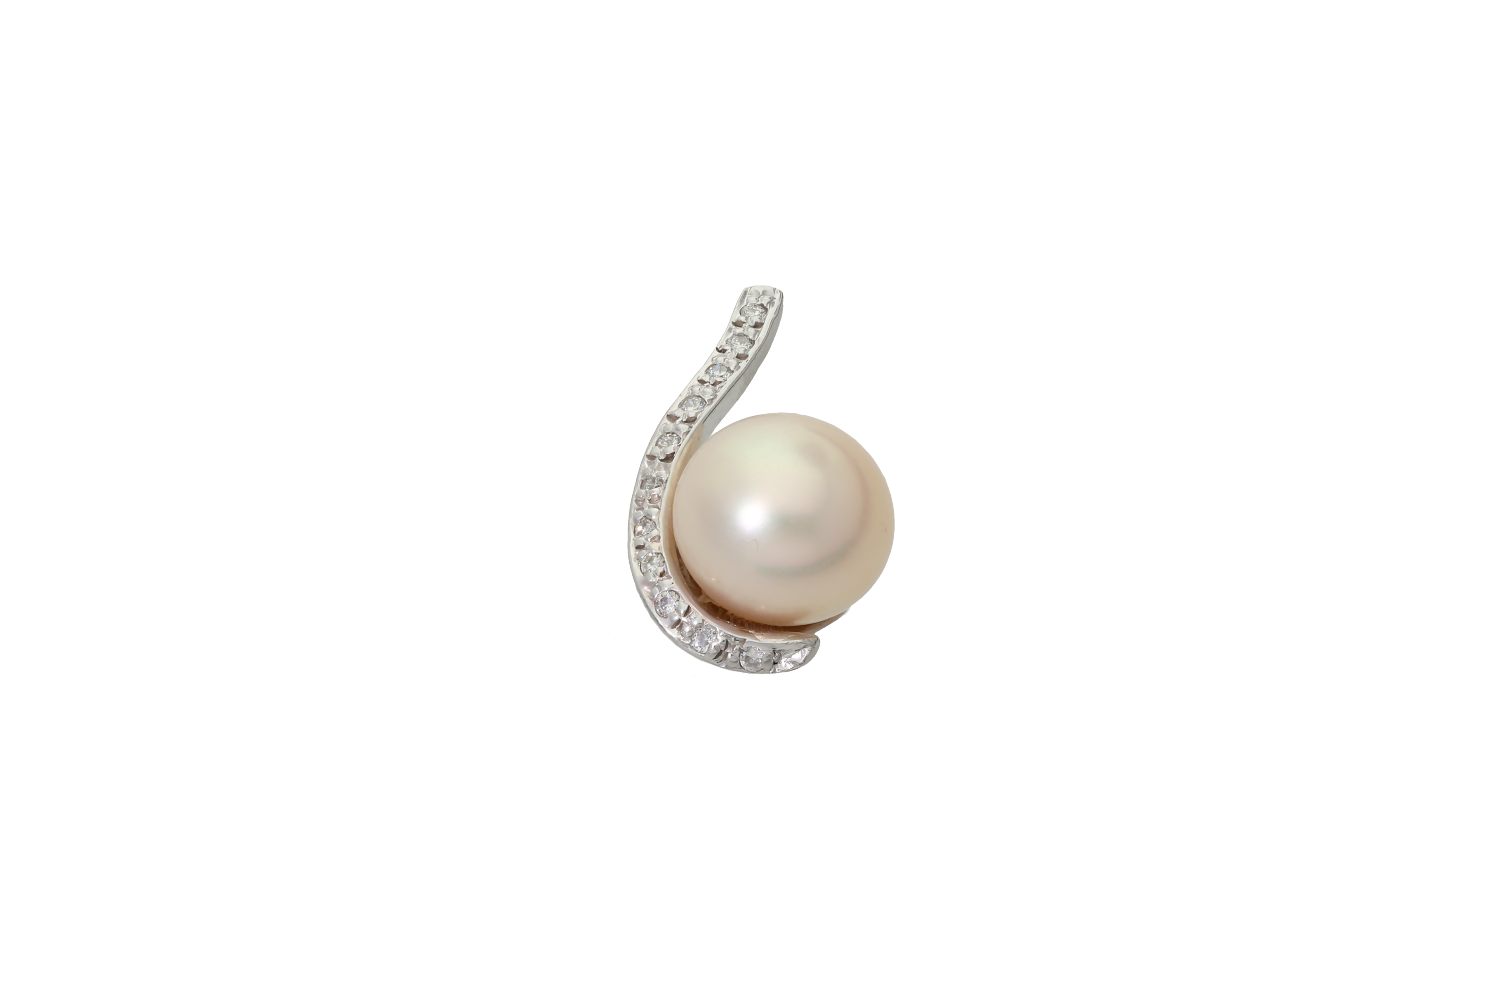 Μενταγιόν σε Λευκόχρυσο 18Κ με ένα κυματιστό στέλεχος που εφάπτεται με ένα μαργαριτάρι